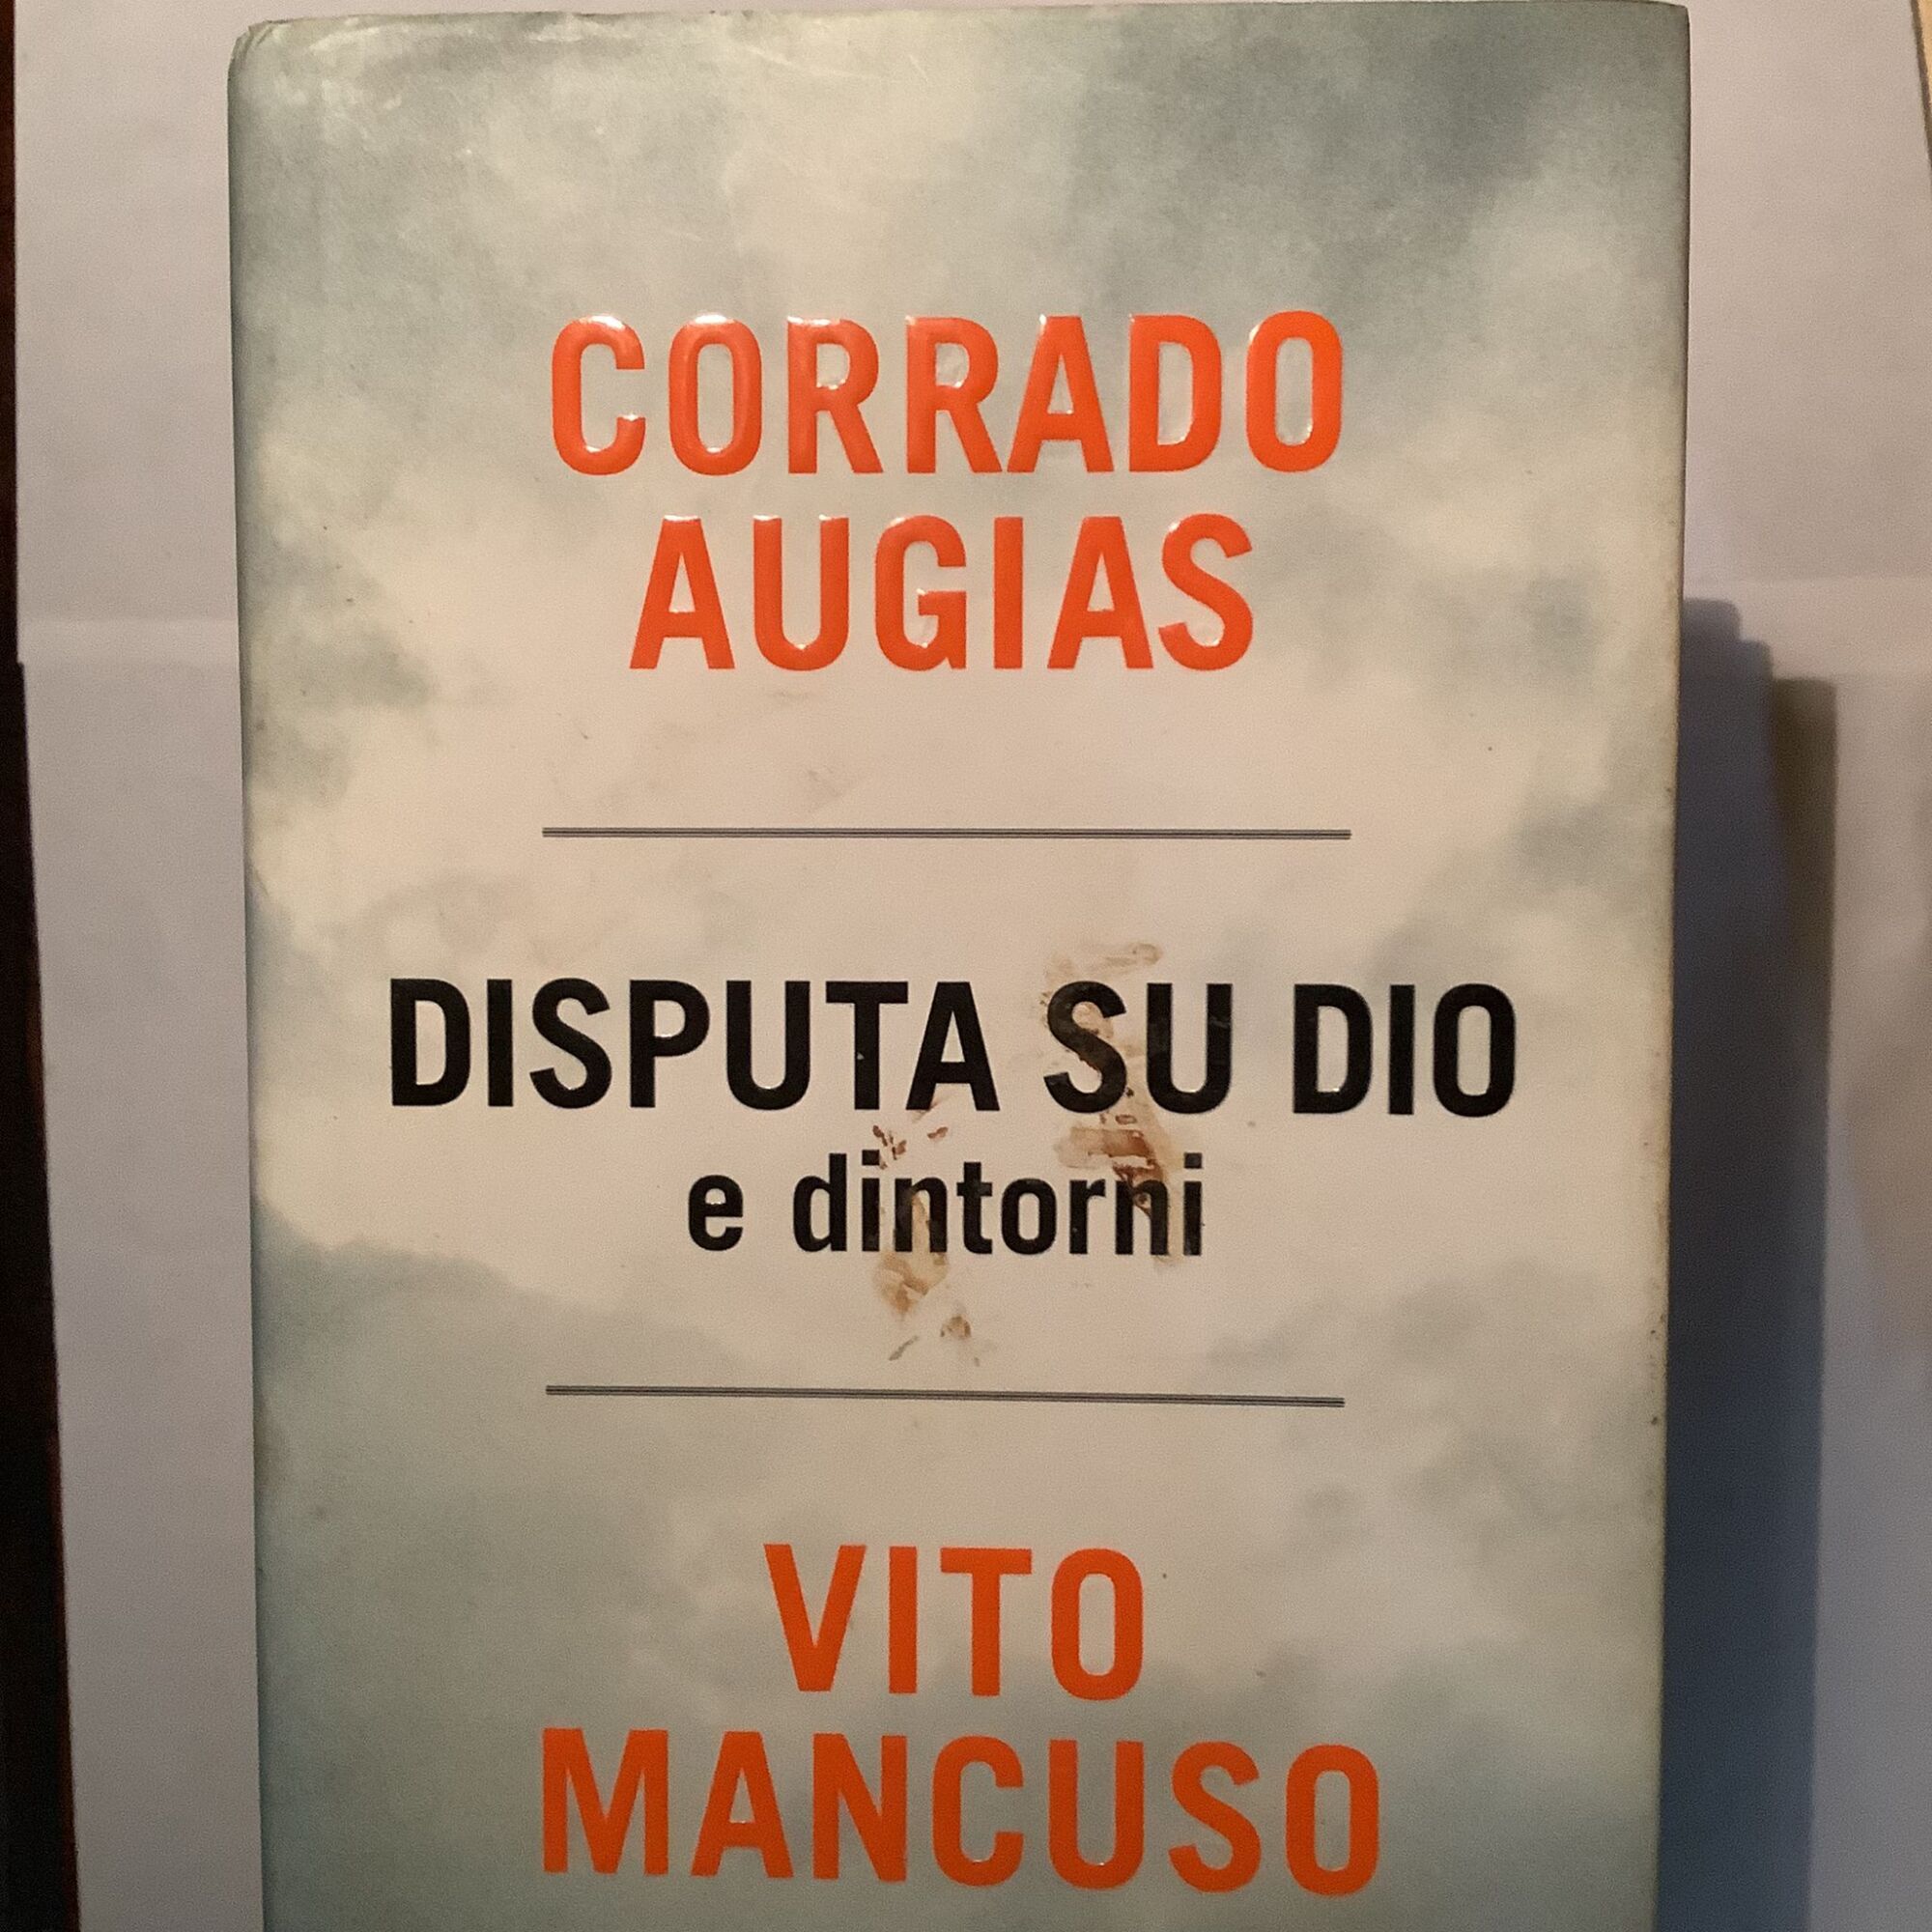 Disputa su Dio e dintorni - Augias Corrado